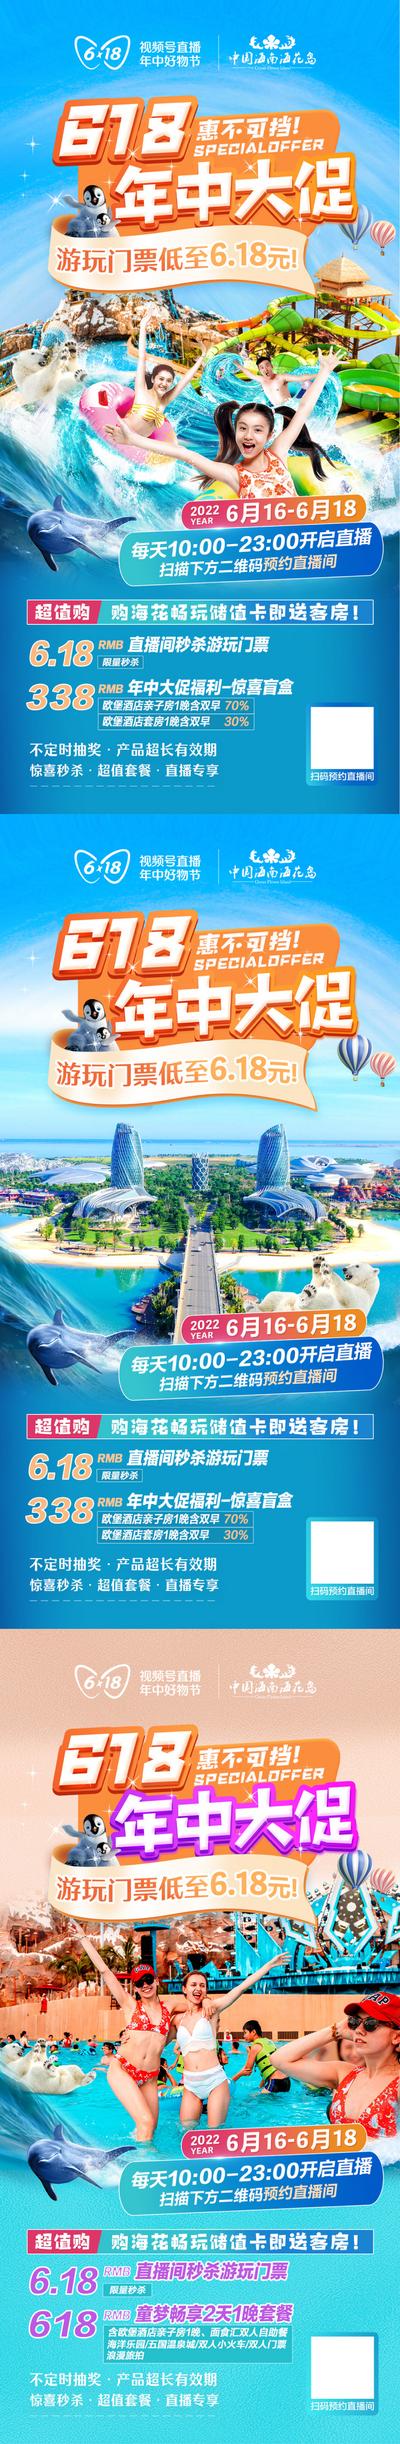 南门网 海报 旅游 618 年中大促 人物 促销 海岛 狂欢 直播 水上乐园 系列